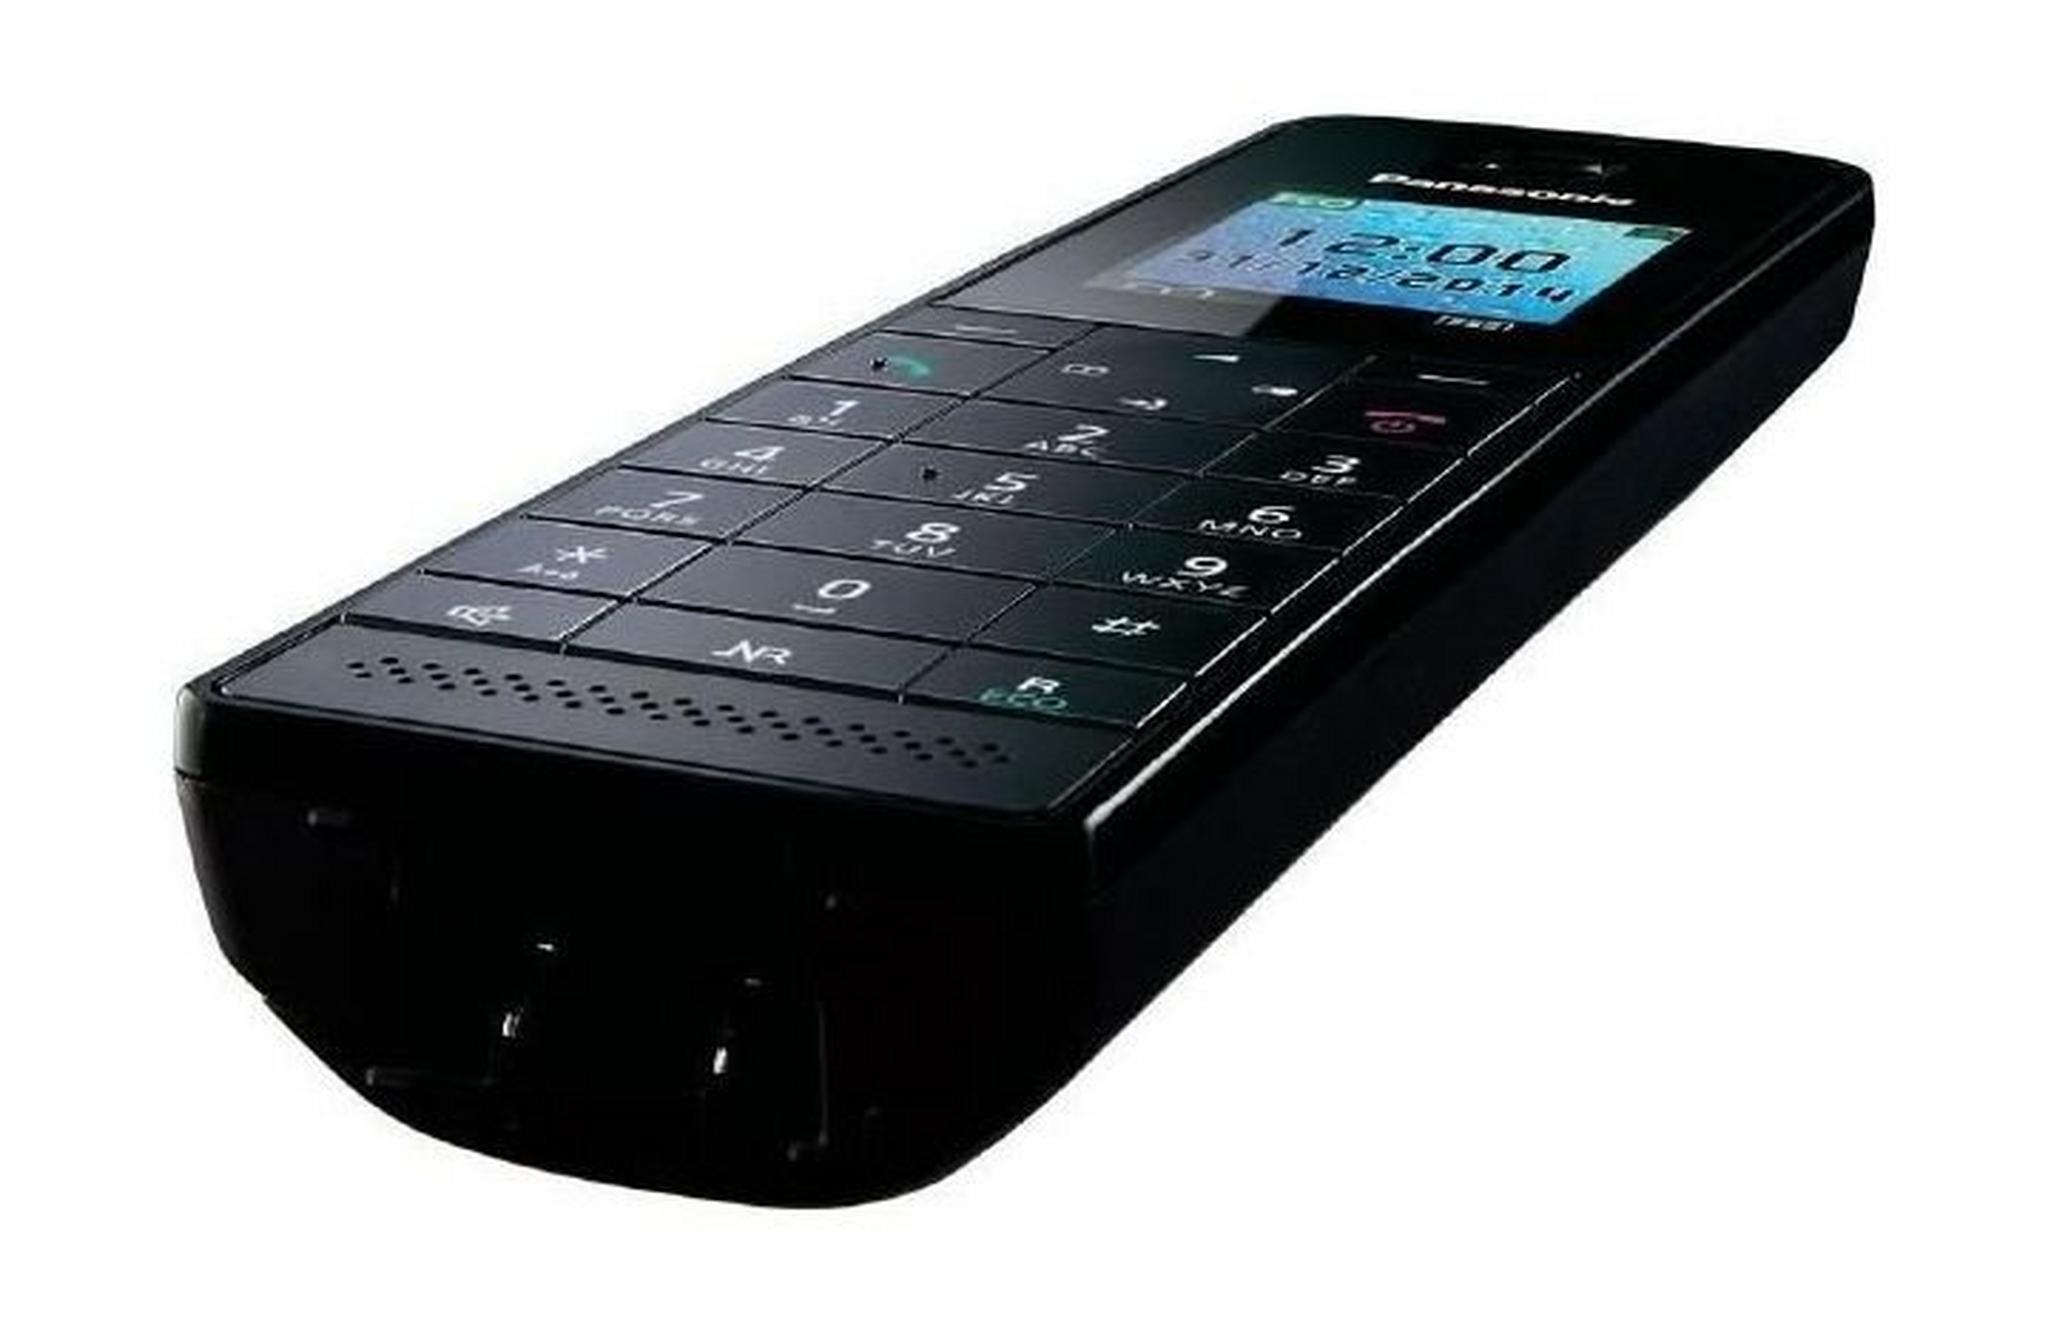 Panasonic KX-TG Series Cordless Landline Telephone (KX-TGH210UEB) - Black